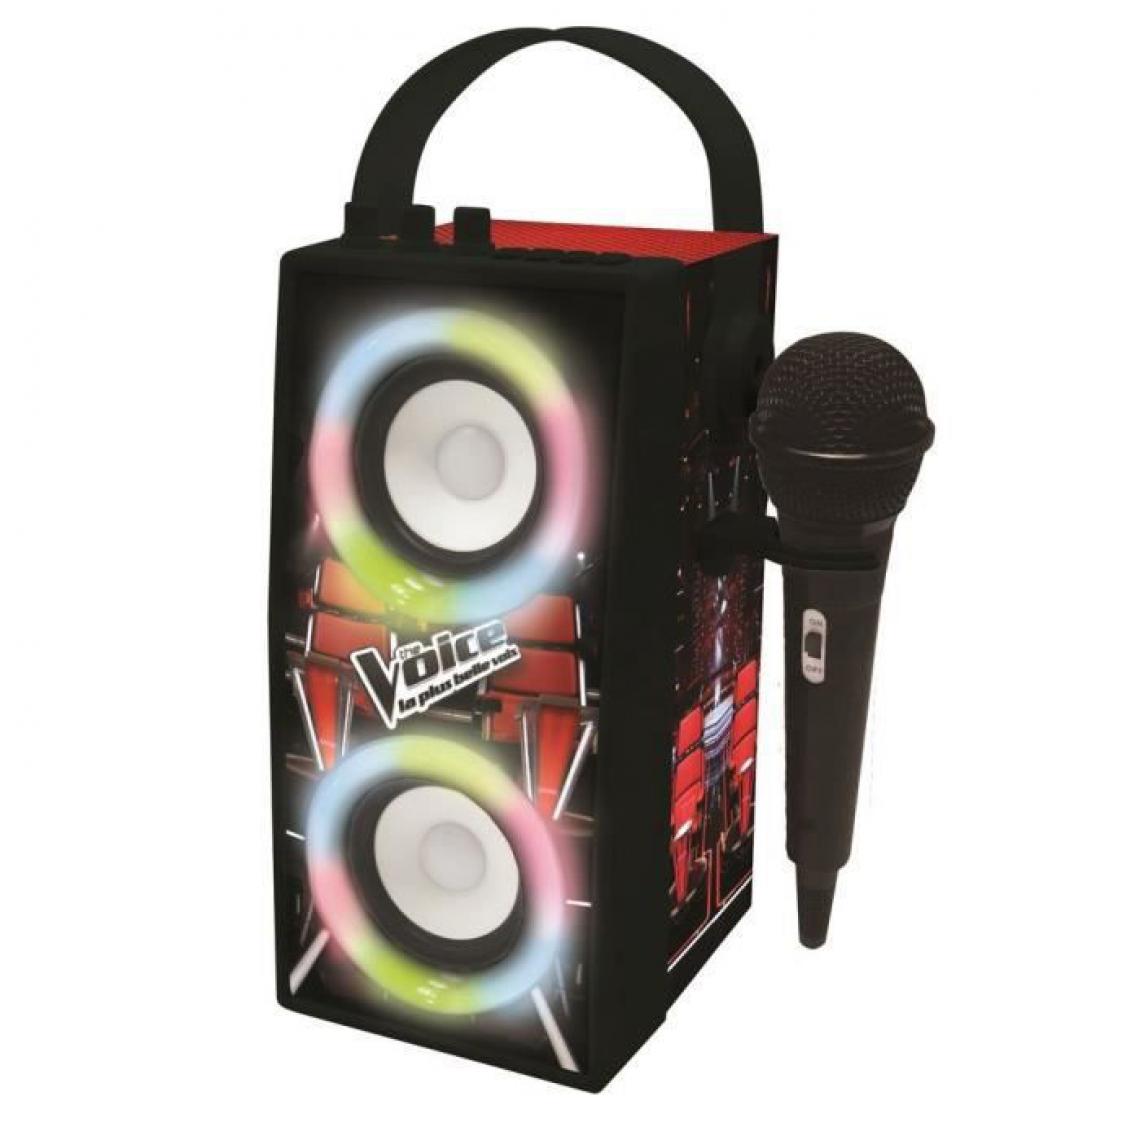 lexibook - THE VOICE - Enceinte Tendance Bluetooth - Portable avec micro et effets lumineux - Radio, lecteur CD/MP3 enfant